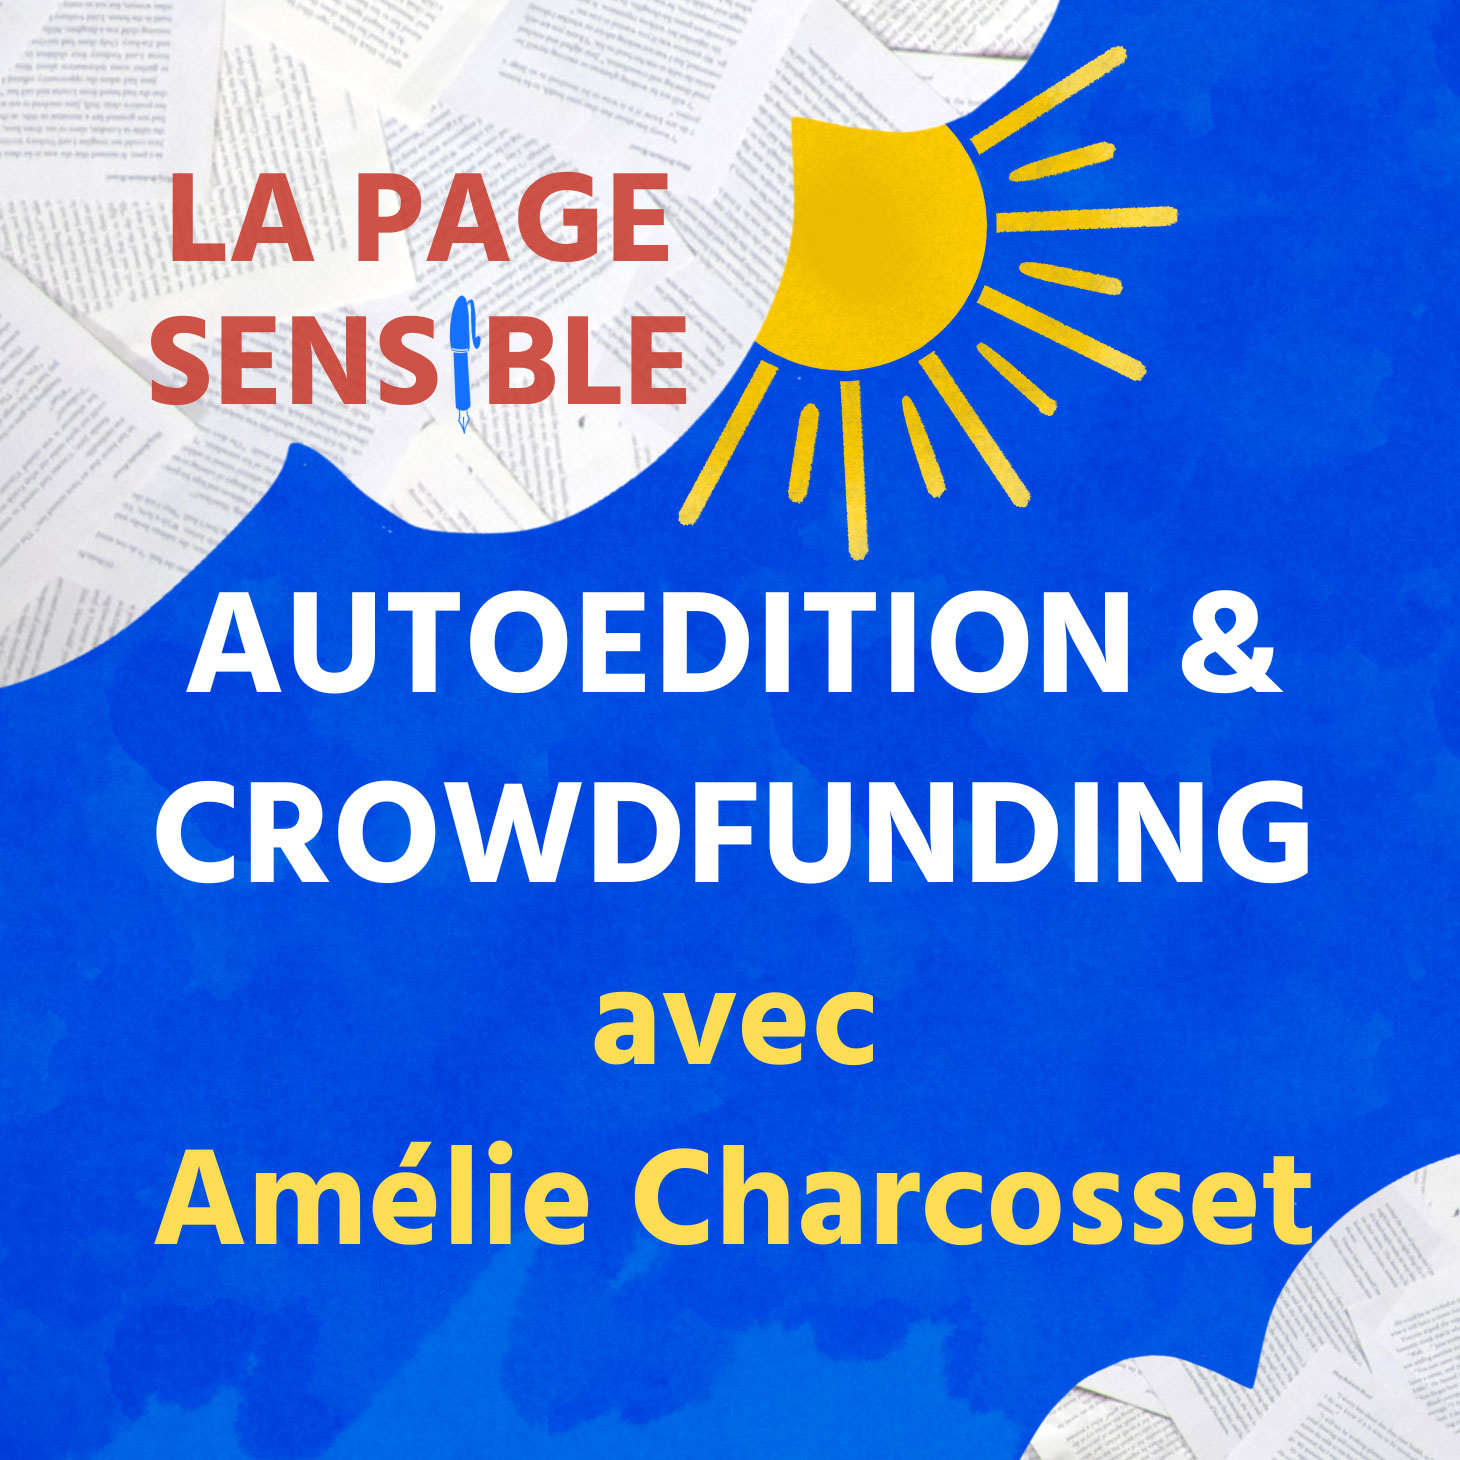 Un podcast autour de l'écriture et du premier roman d'Amélie Charcosset, qu'elle a autoédité avec grand succès via la plate-forme de financement participatif Ulule.